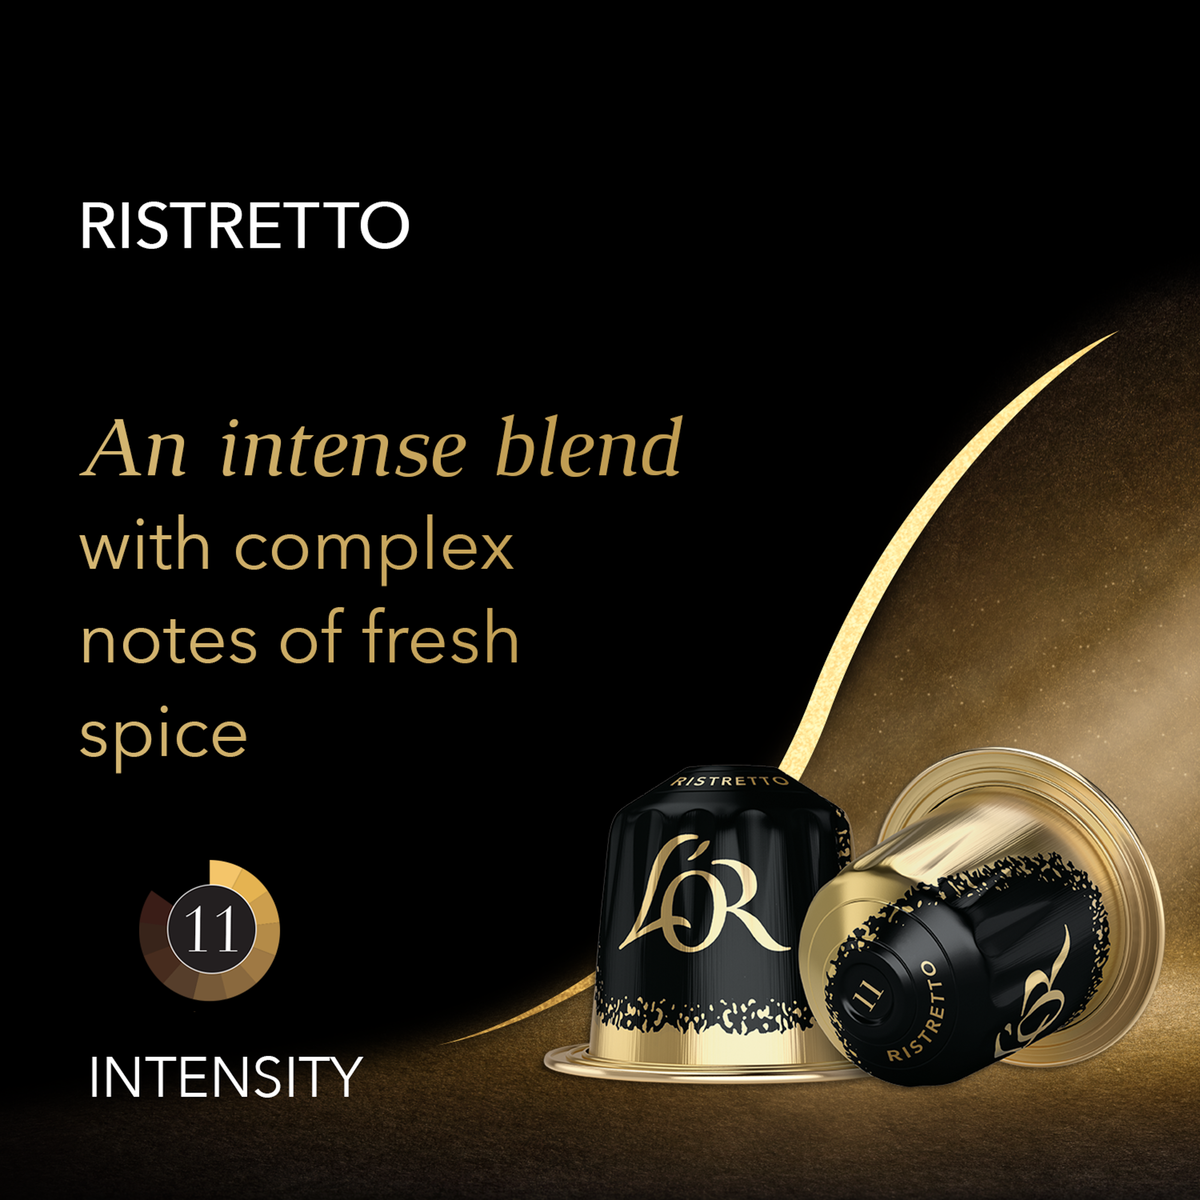 L'Or Espresso Ristretto Intensity 11 Aluminium Coffee Capsules 10 pcs